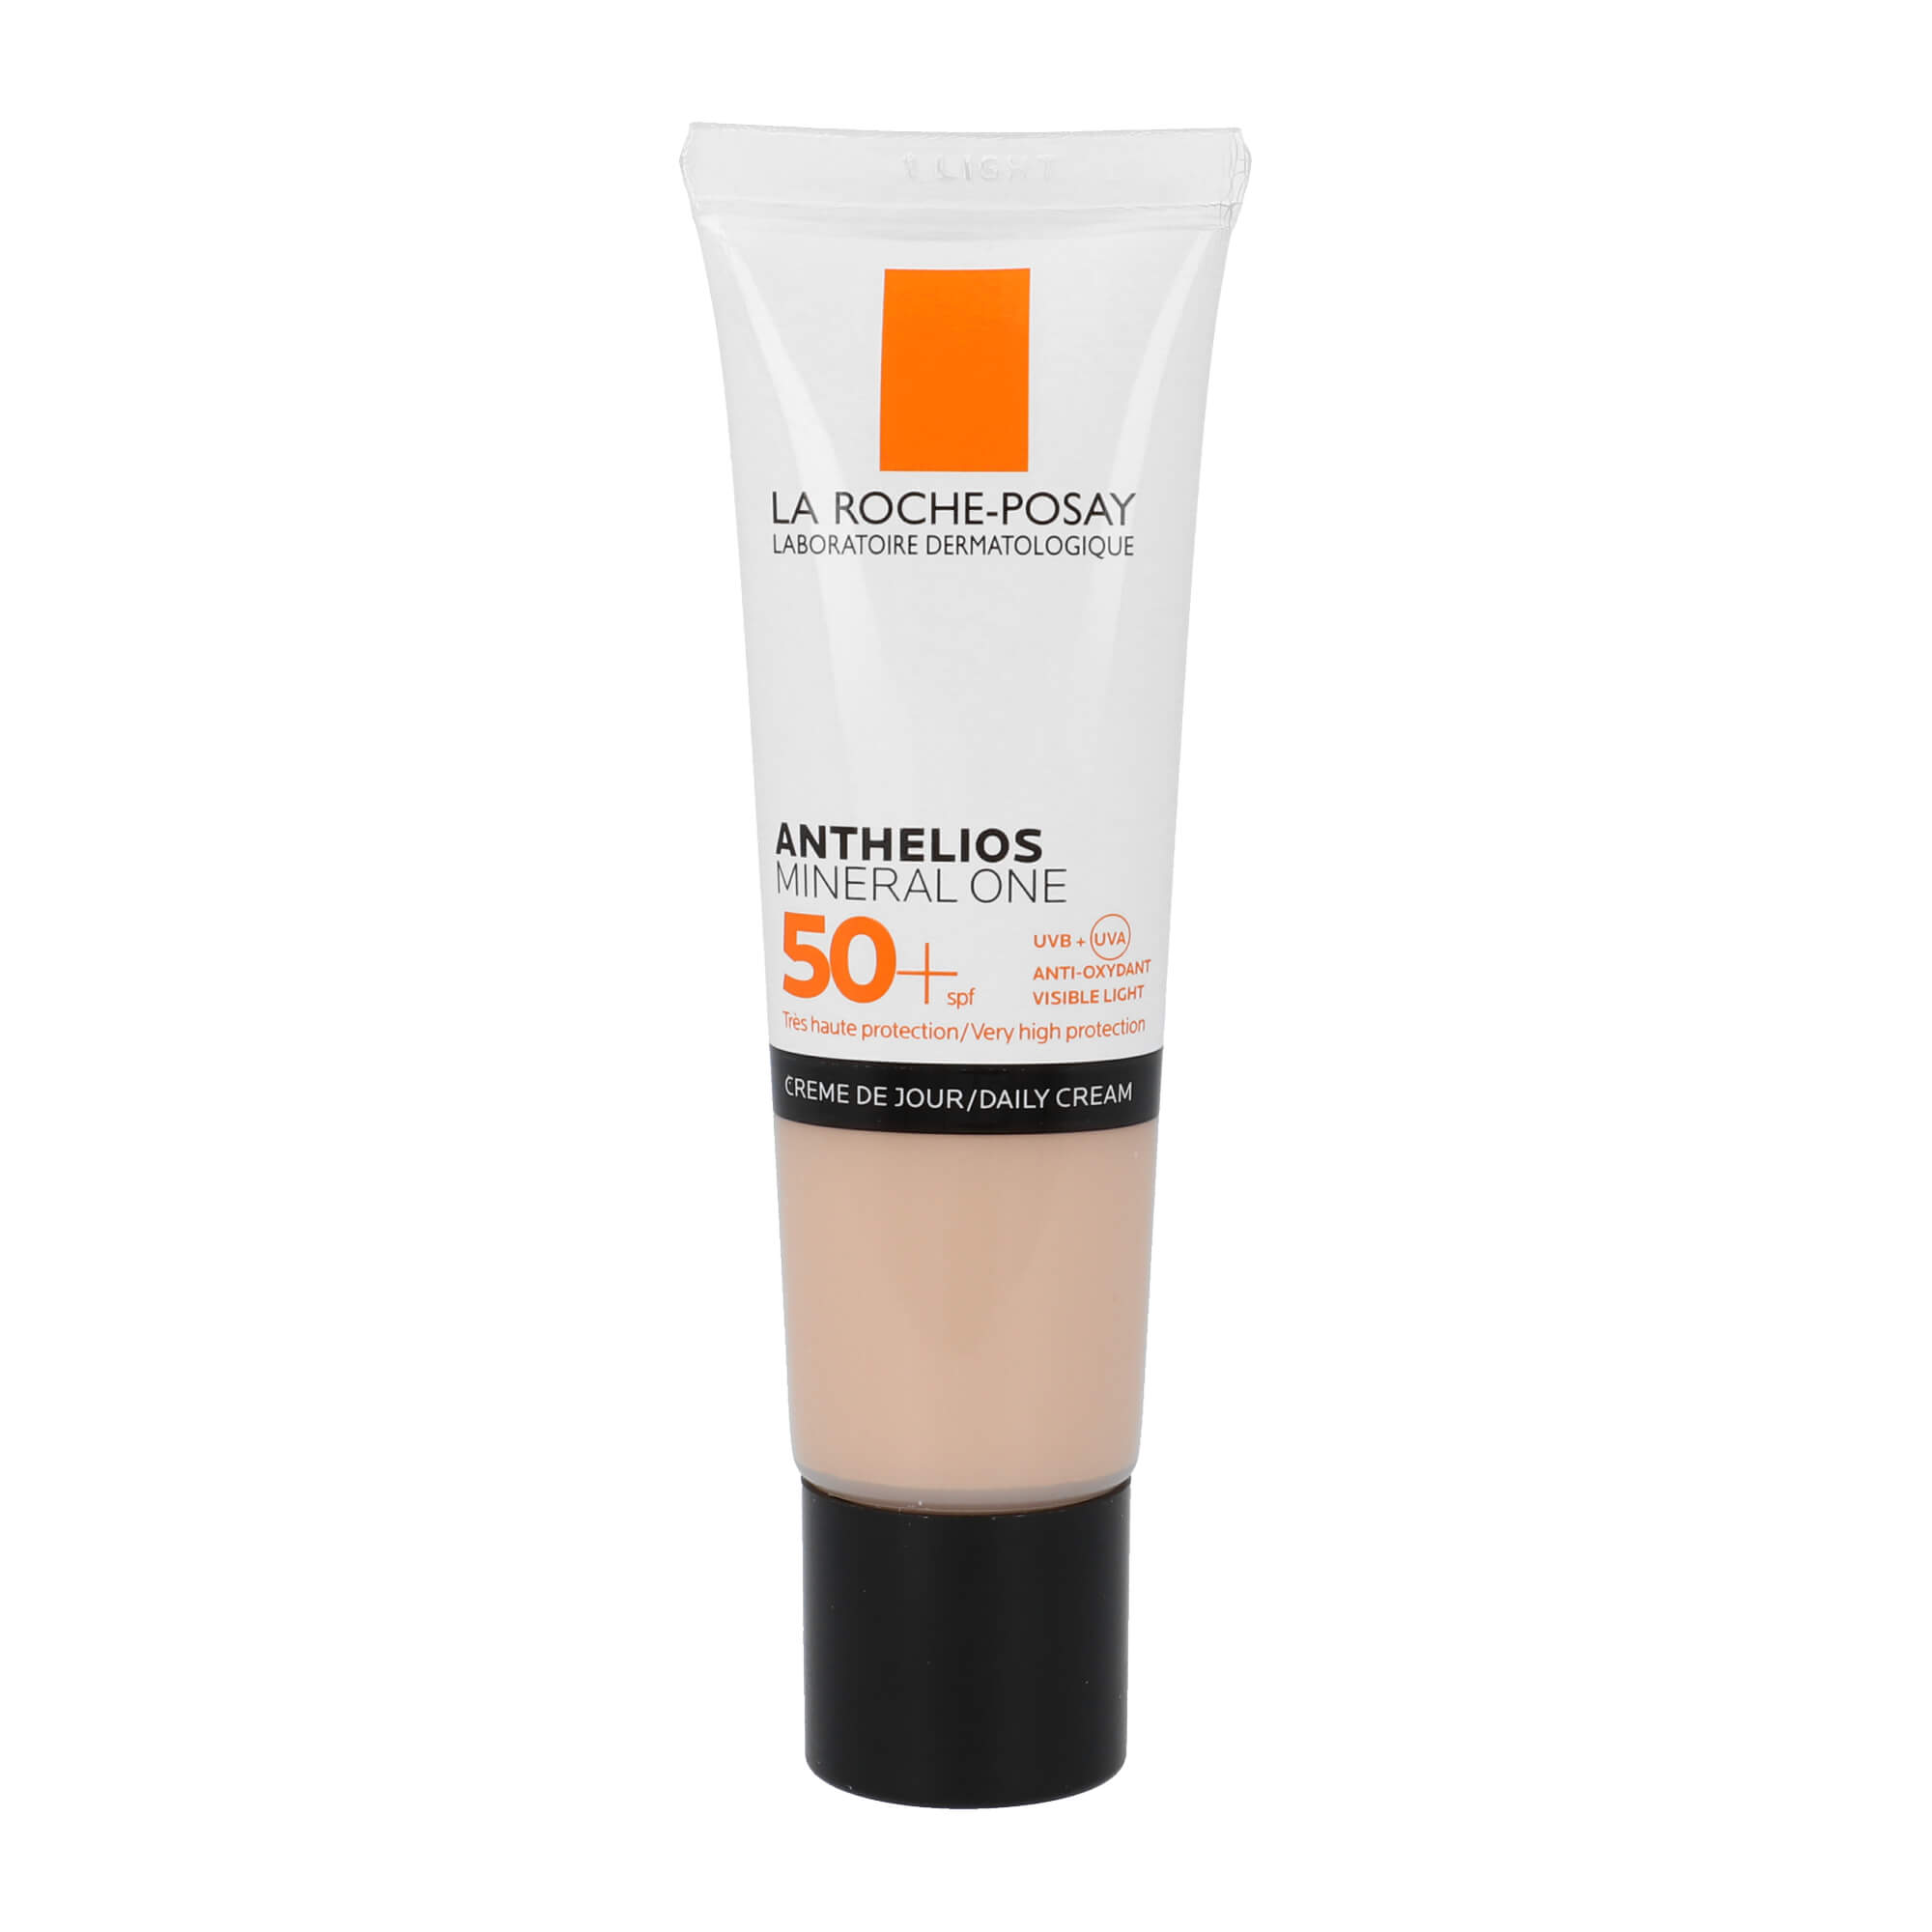 Für empfindliche Haut geeignet und mit 100% mineralischen UV-Filter. Nuance: Claire / Light.